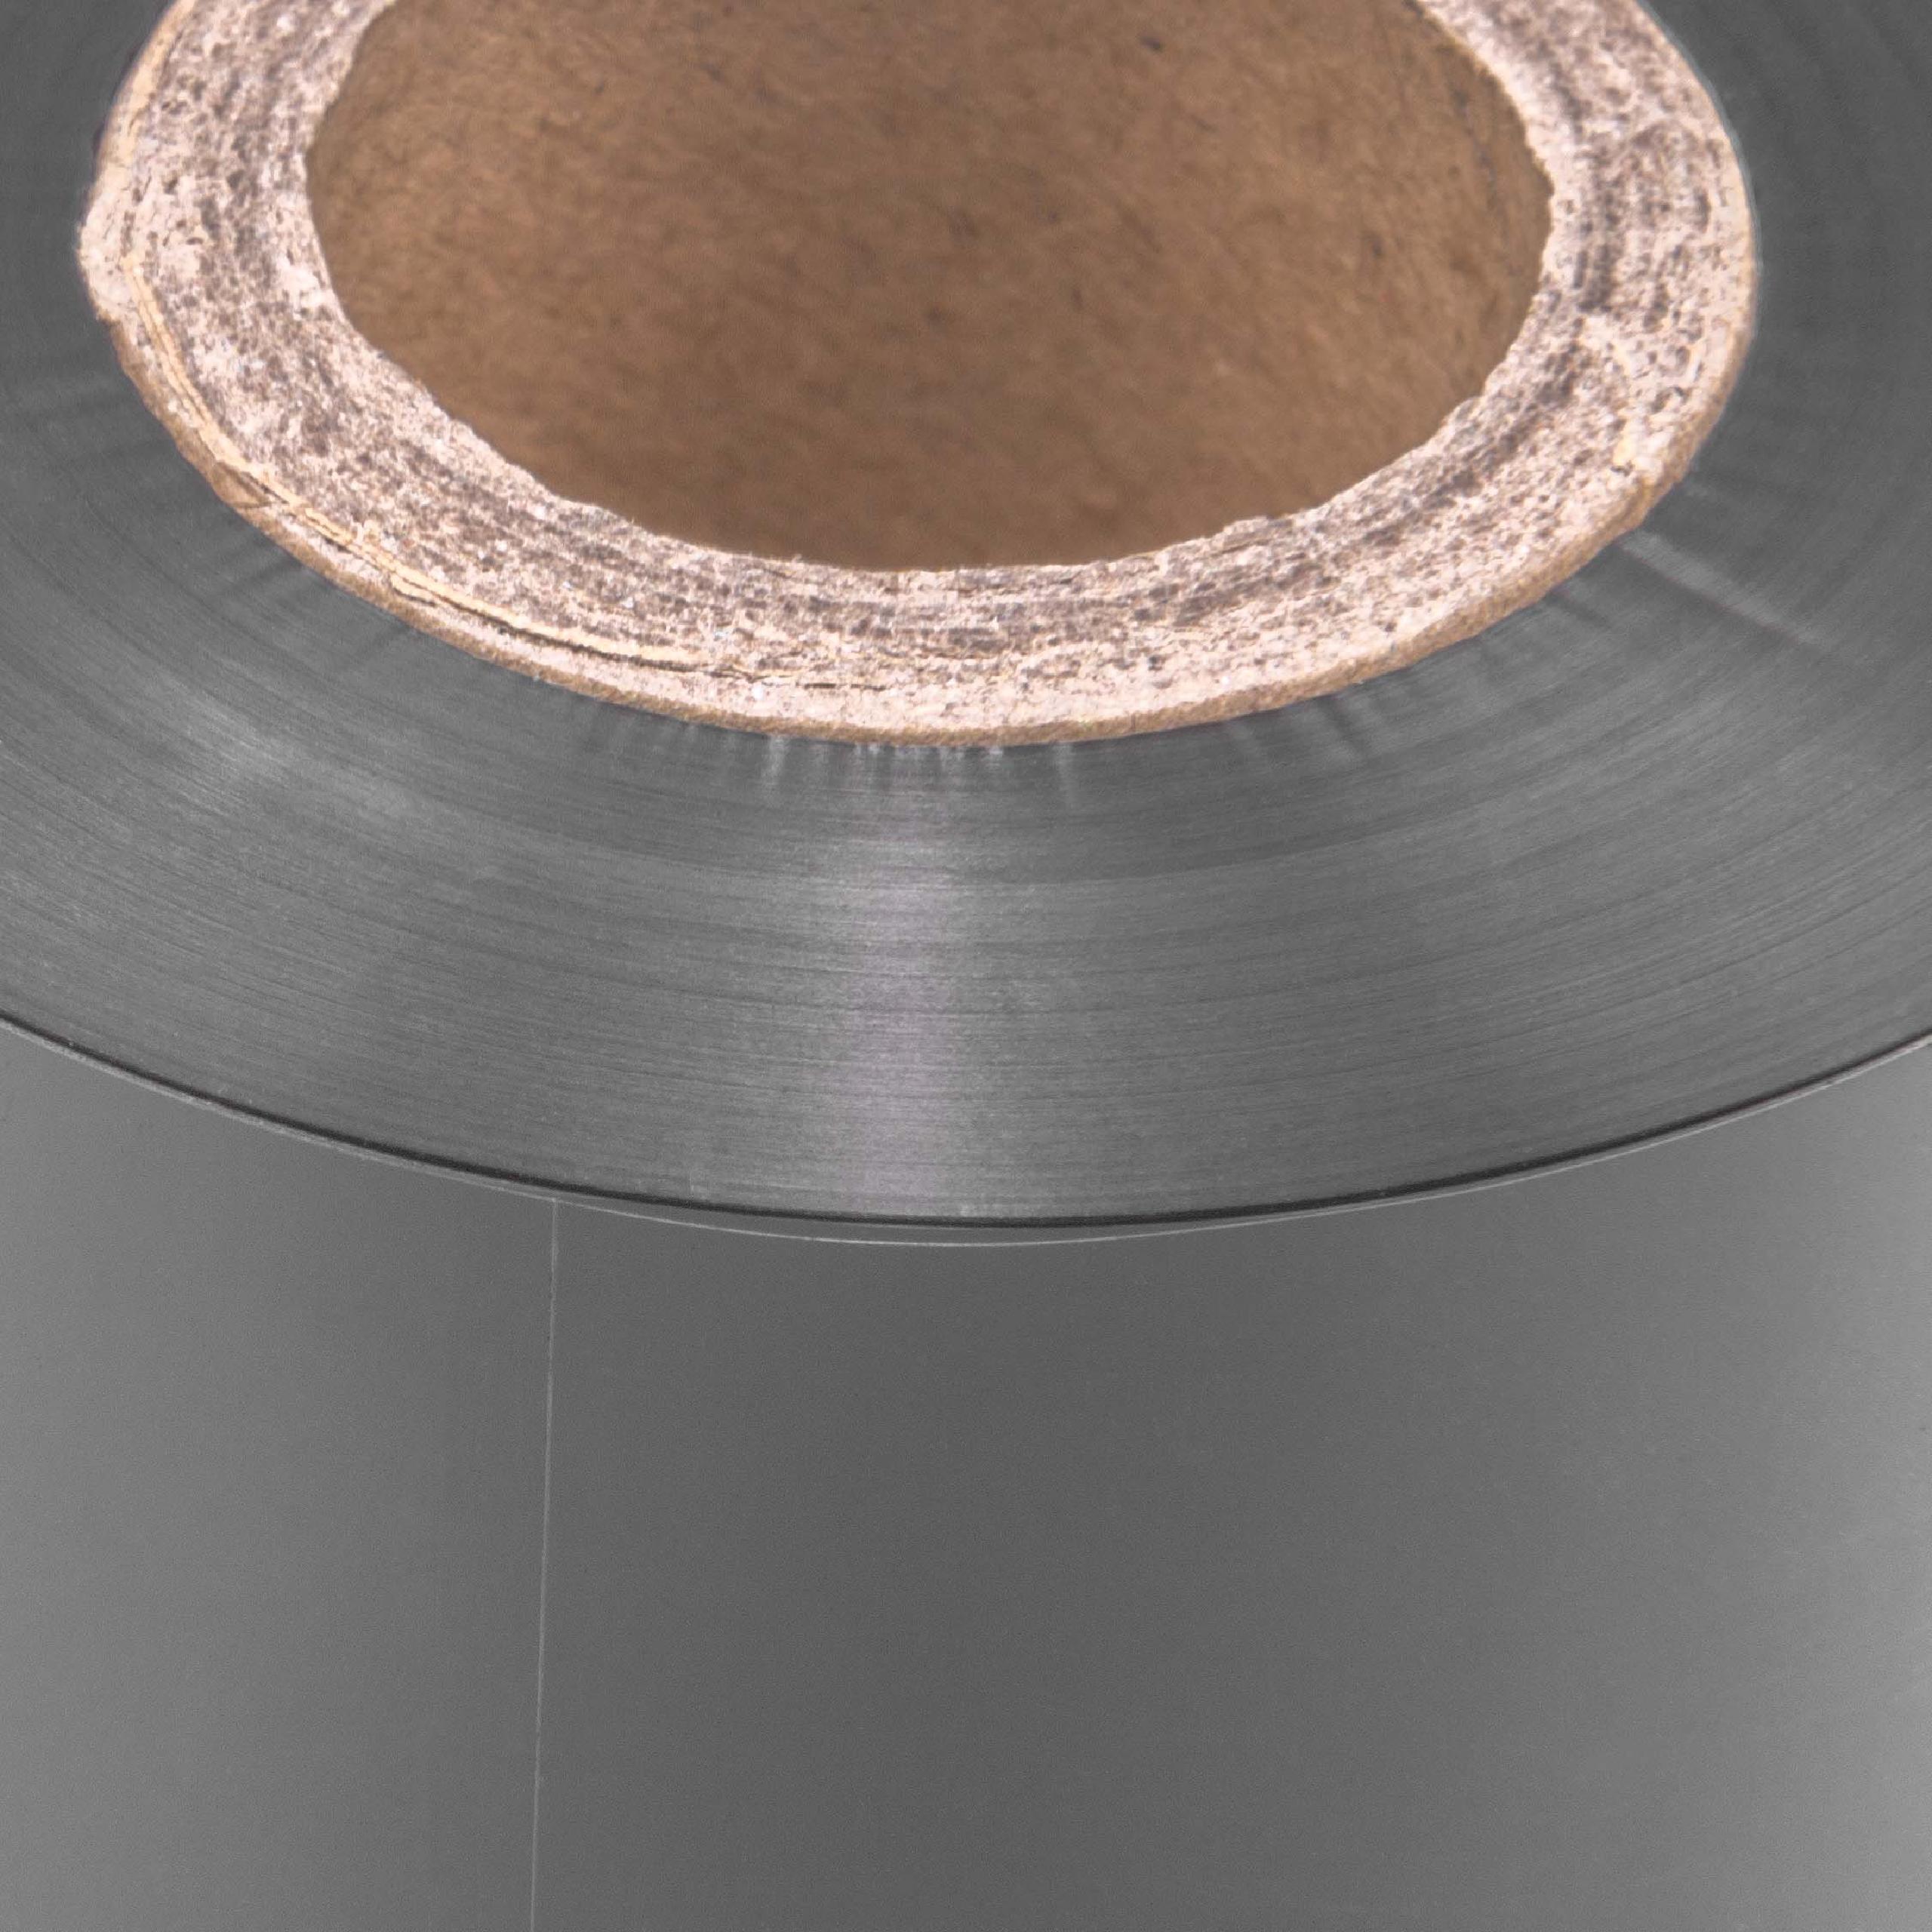 Ruban de transfert thermique pour imprimante Godex et autres - 70 mm x 300 m, résine/cire